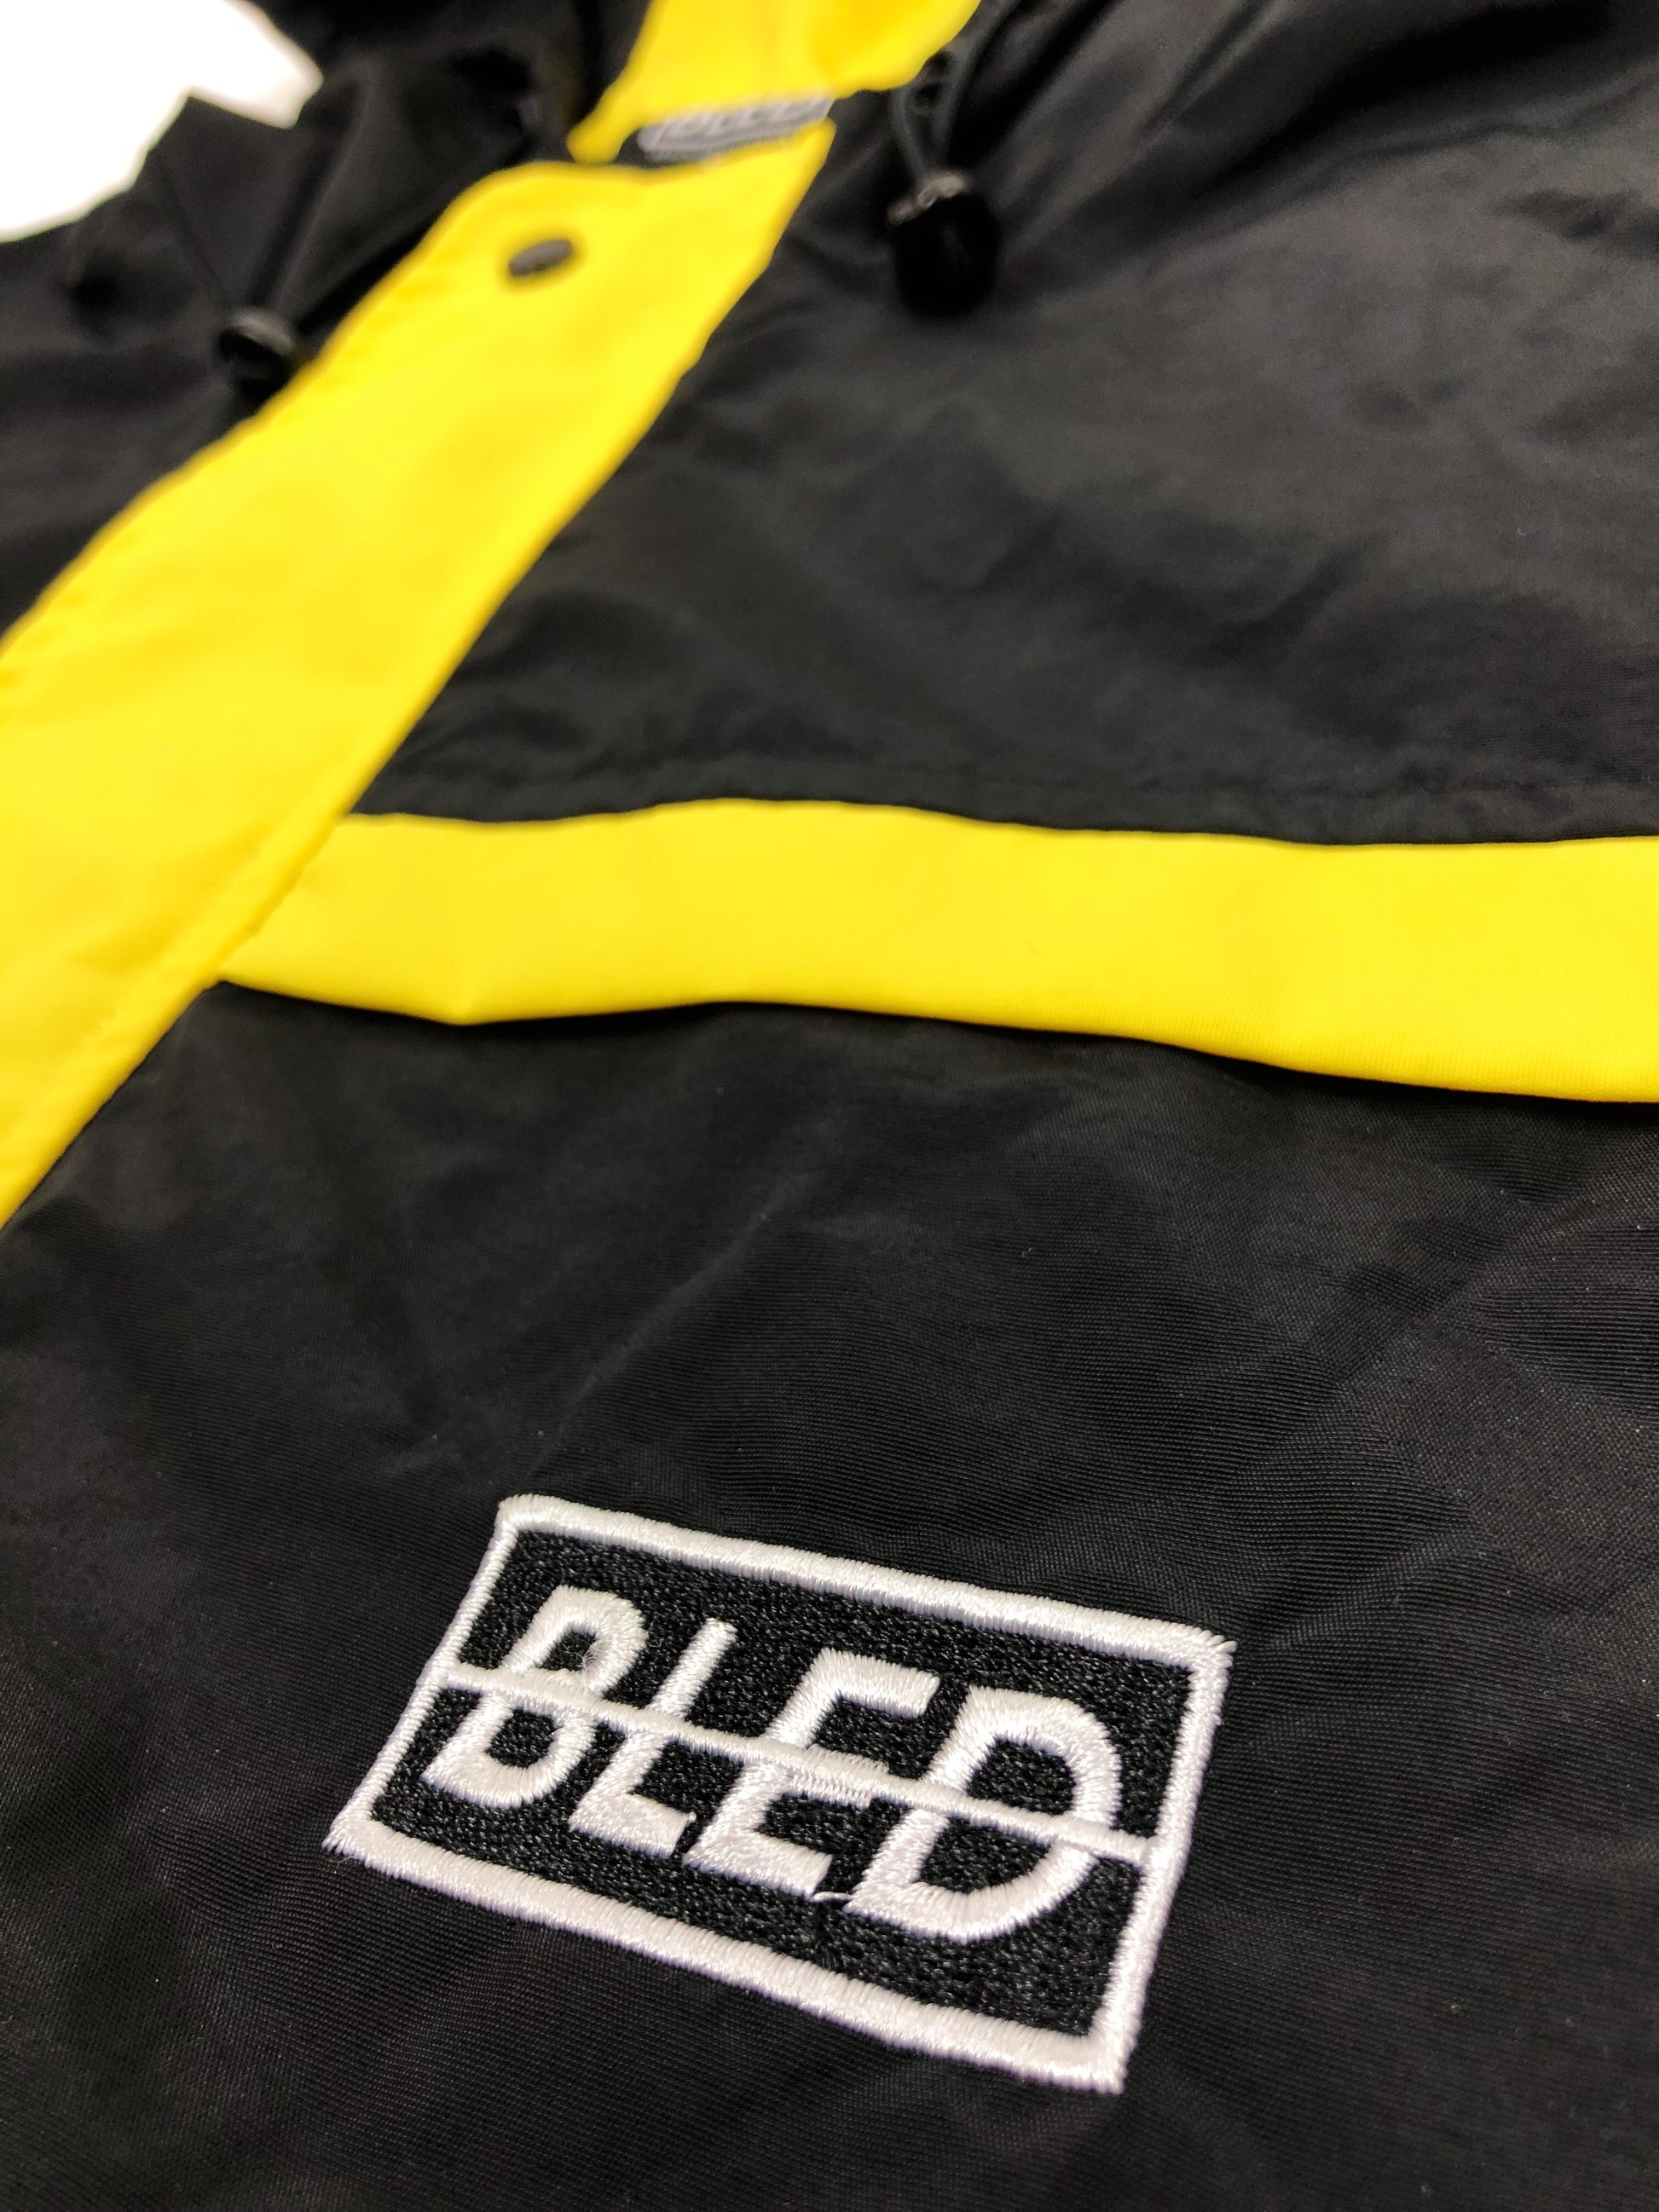 Bled Bledwear Stealth Hooded Tracksuit Windbreaker Track Jacket Black Yellow Streetwear Street Fashion Hypebeast 